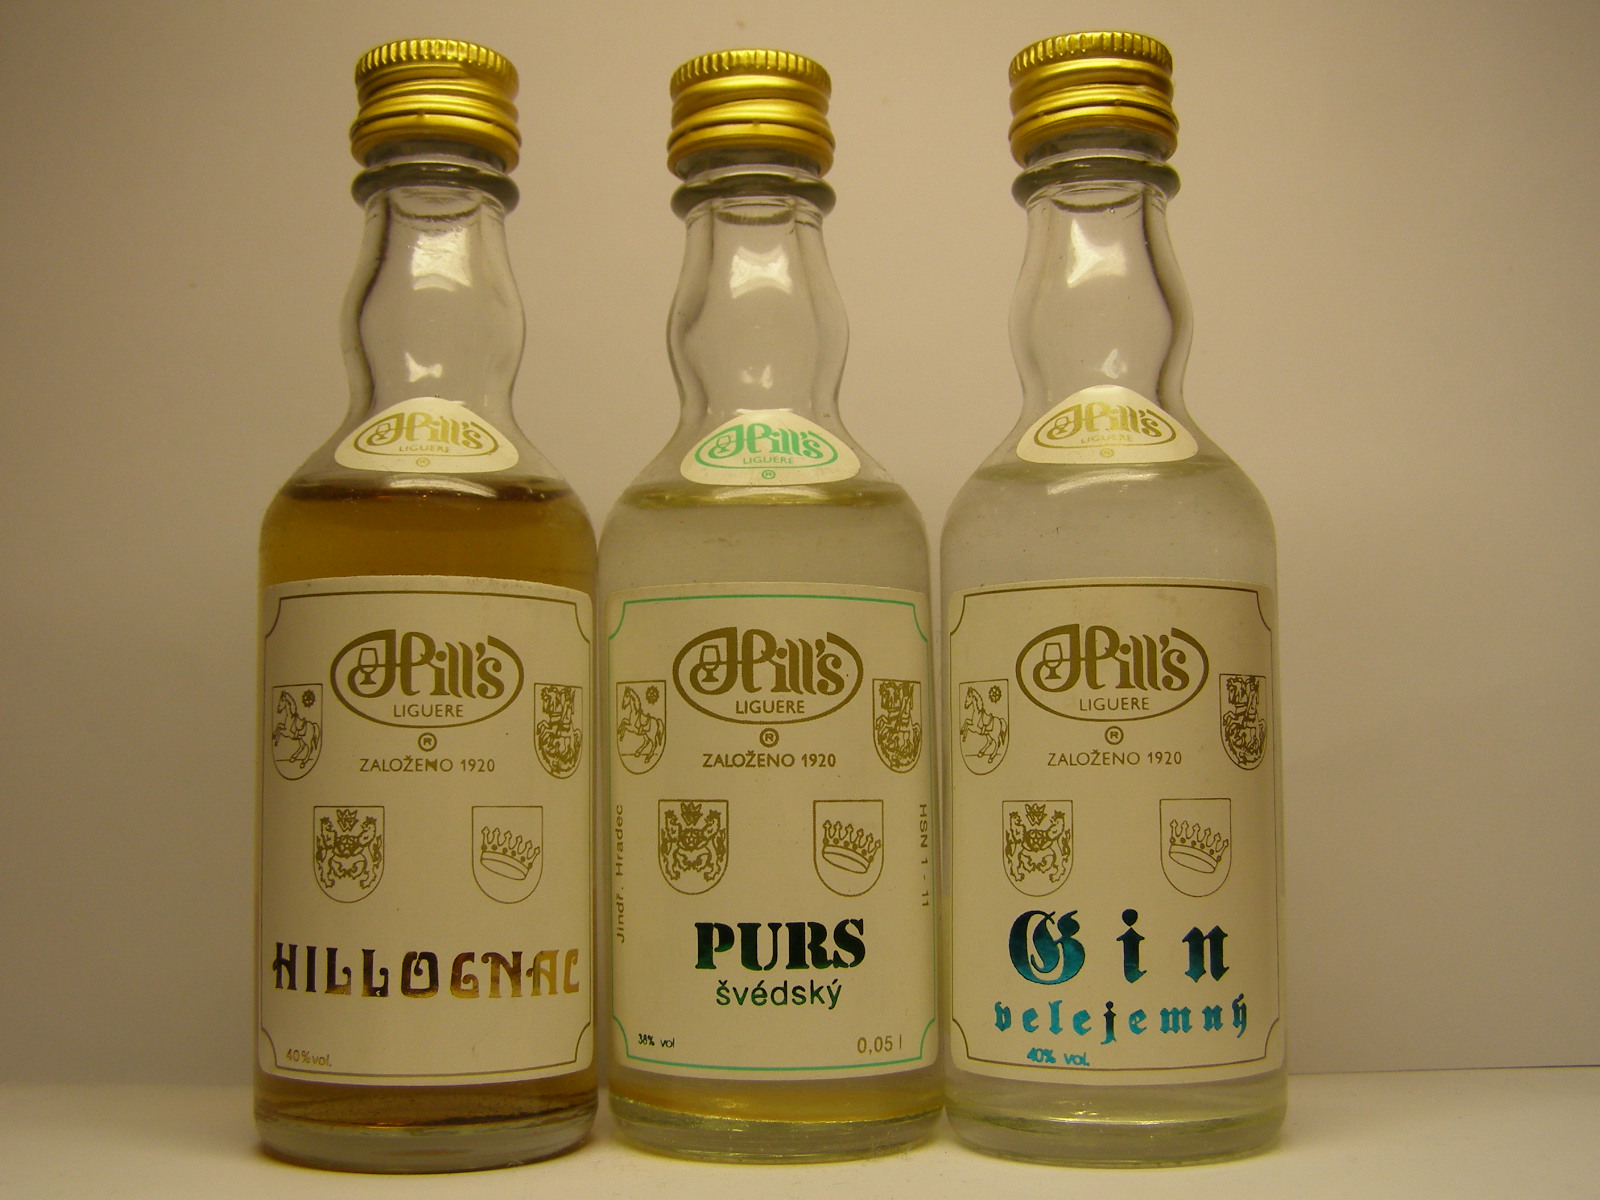 HILL´S Hillognac - Purs švédsky - Gin velejemný